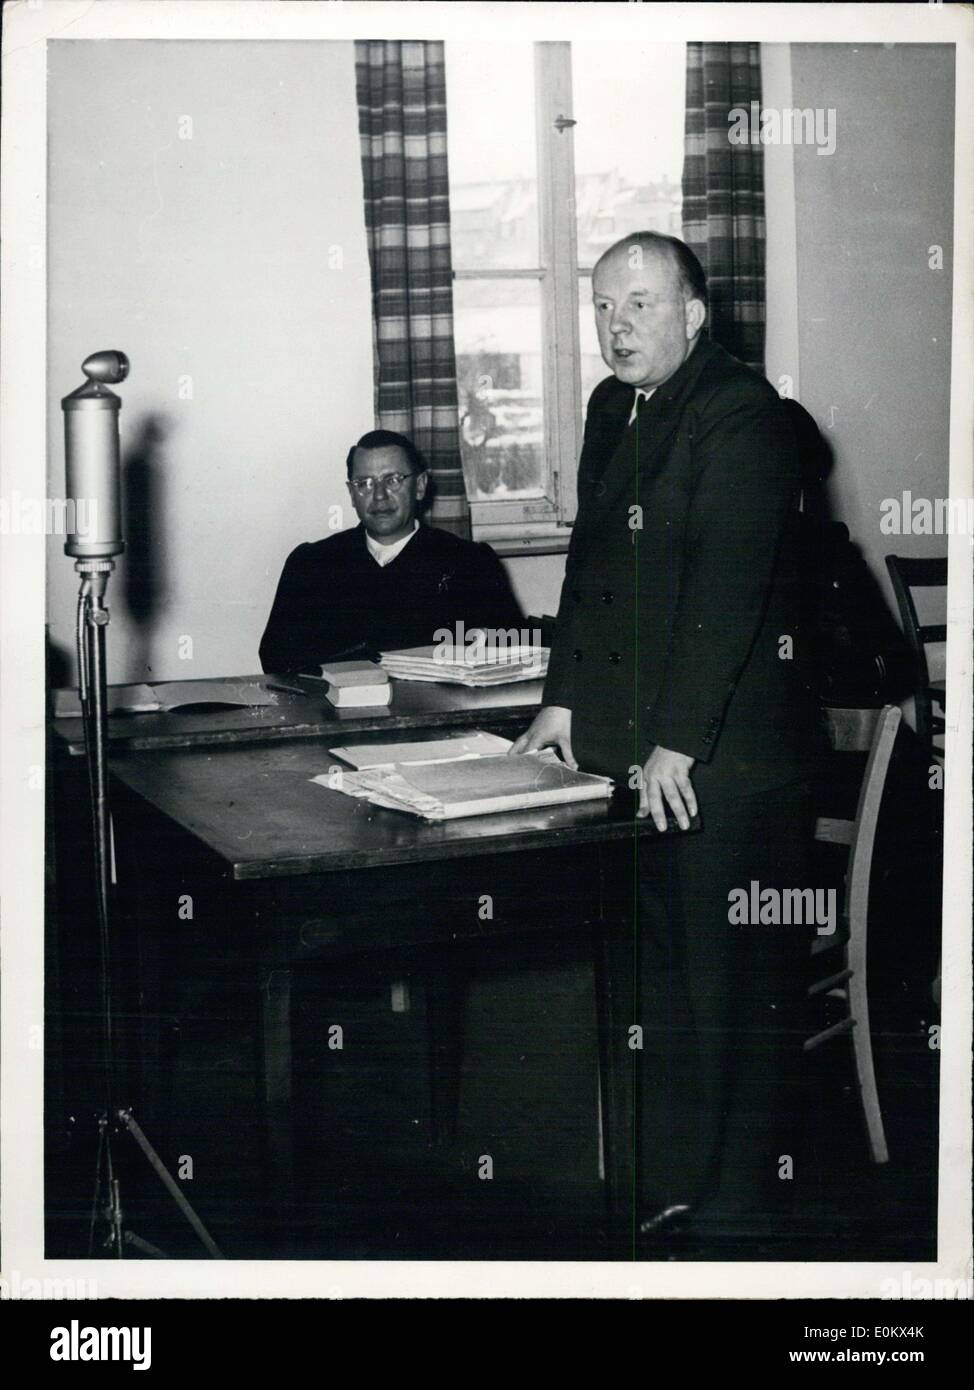 Febbraio 06, 1952 - nella foto è ex leader nazista Franz Rademacher con il suo avvocato difensore. Rademacher era in prova per essere coinvolti nell'esecuzione di massa di ebrei serbo nonché la deportazione forzata di molti ebrei verso l'isola di Madagascar. Foto Stock